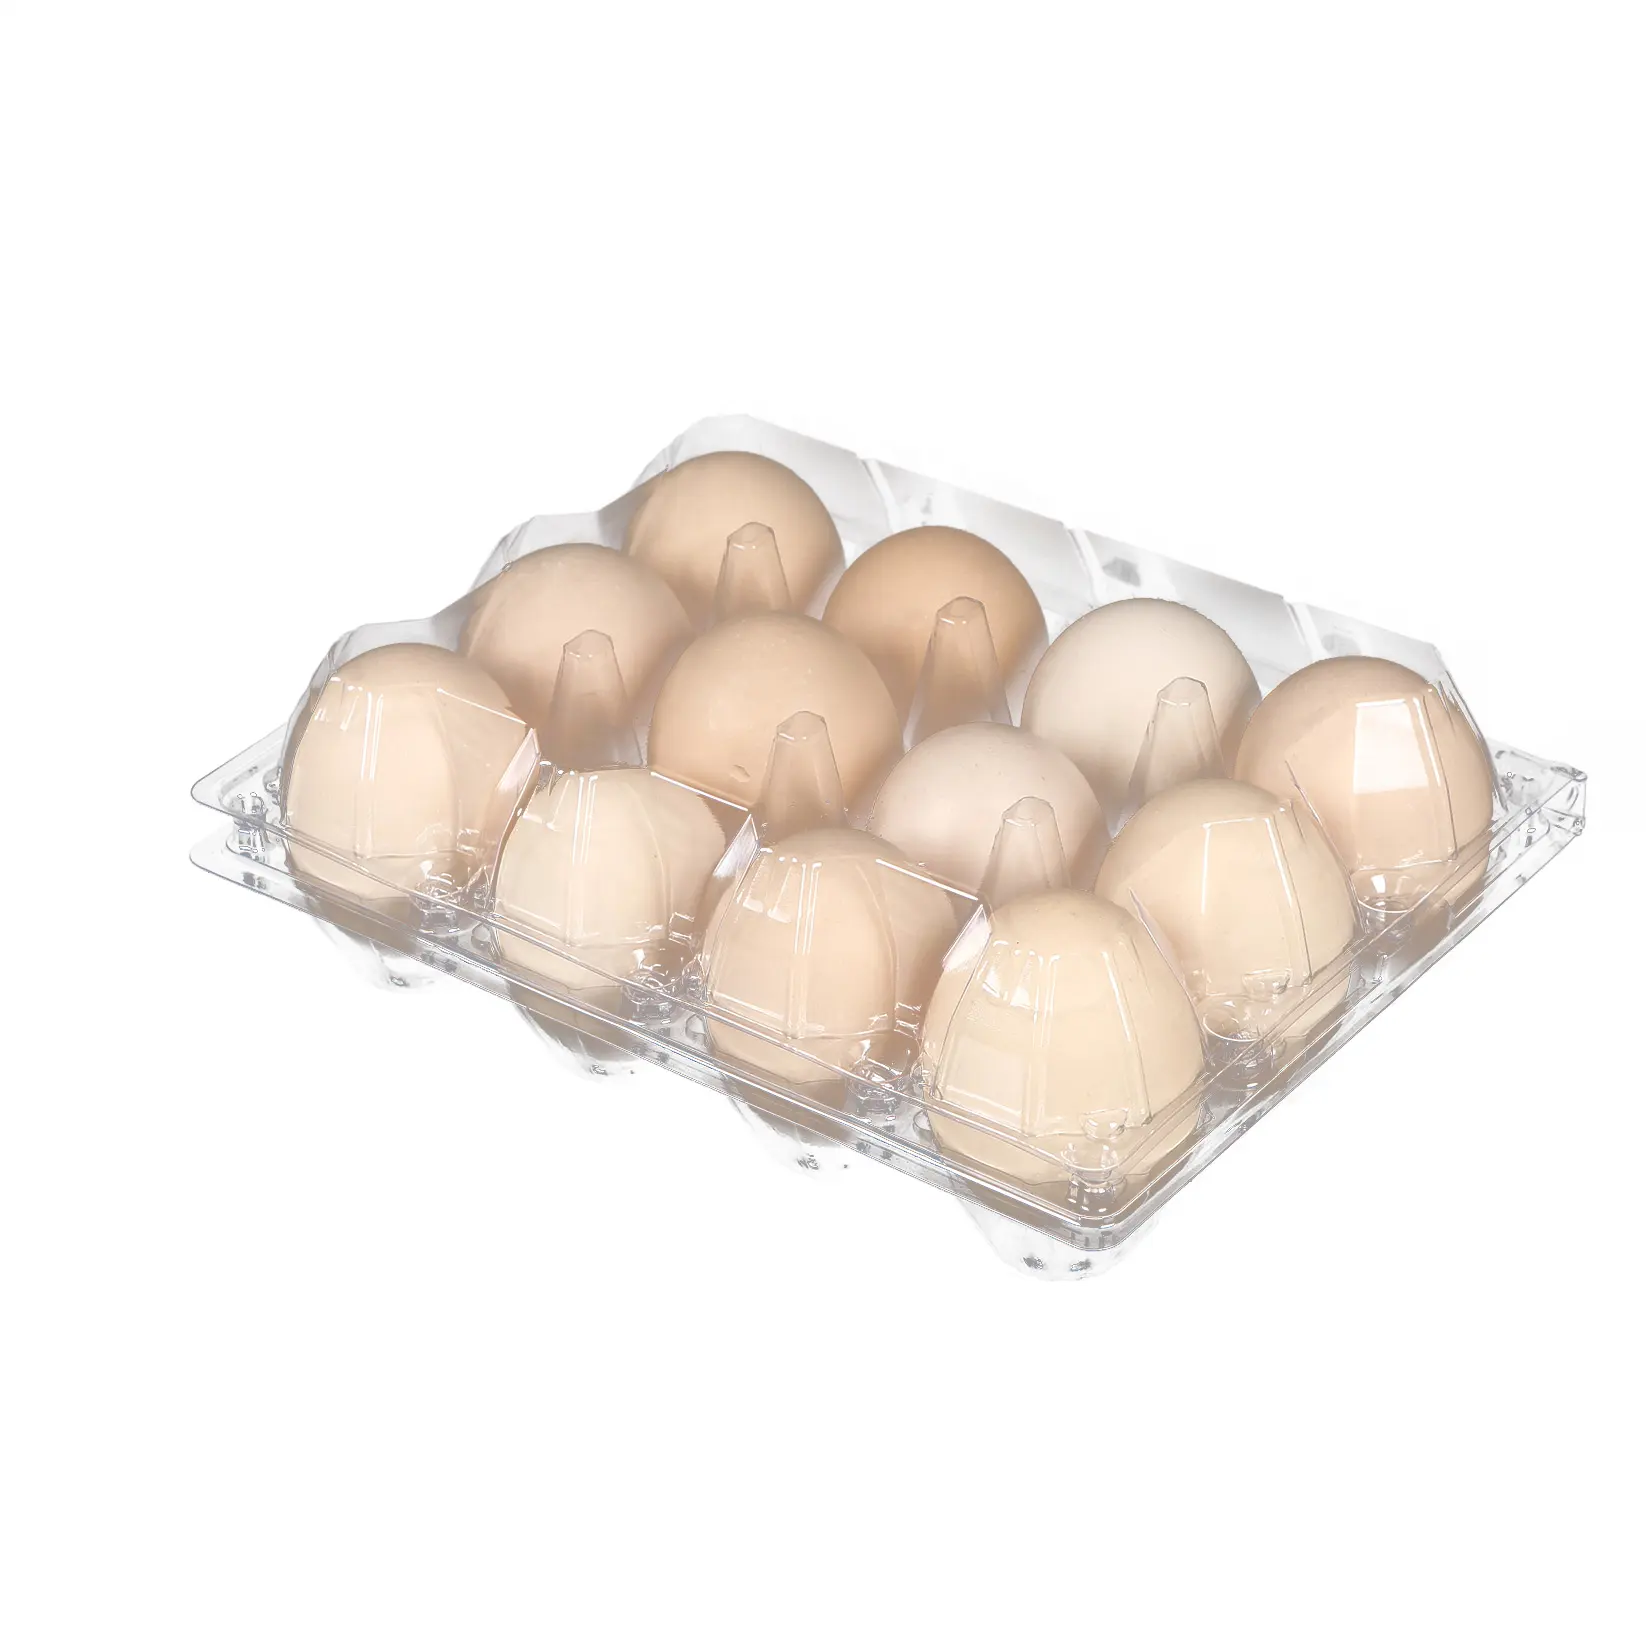 12 Packs karton Jumbo büyük büyük tavuk yumurtası ördek yumurta hücreleri Blister şeffaf süpermarket için depolama üreticisi için